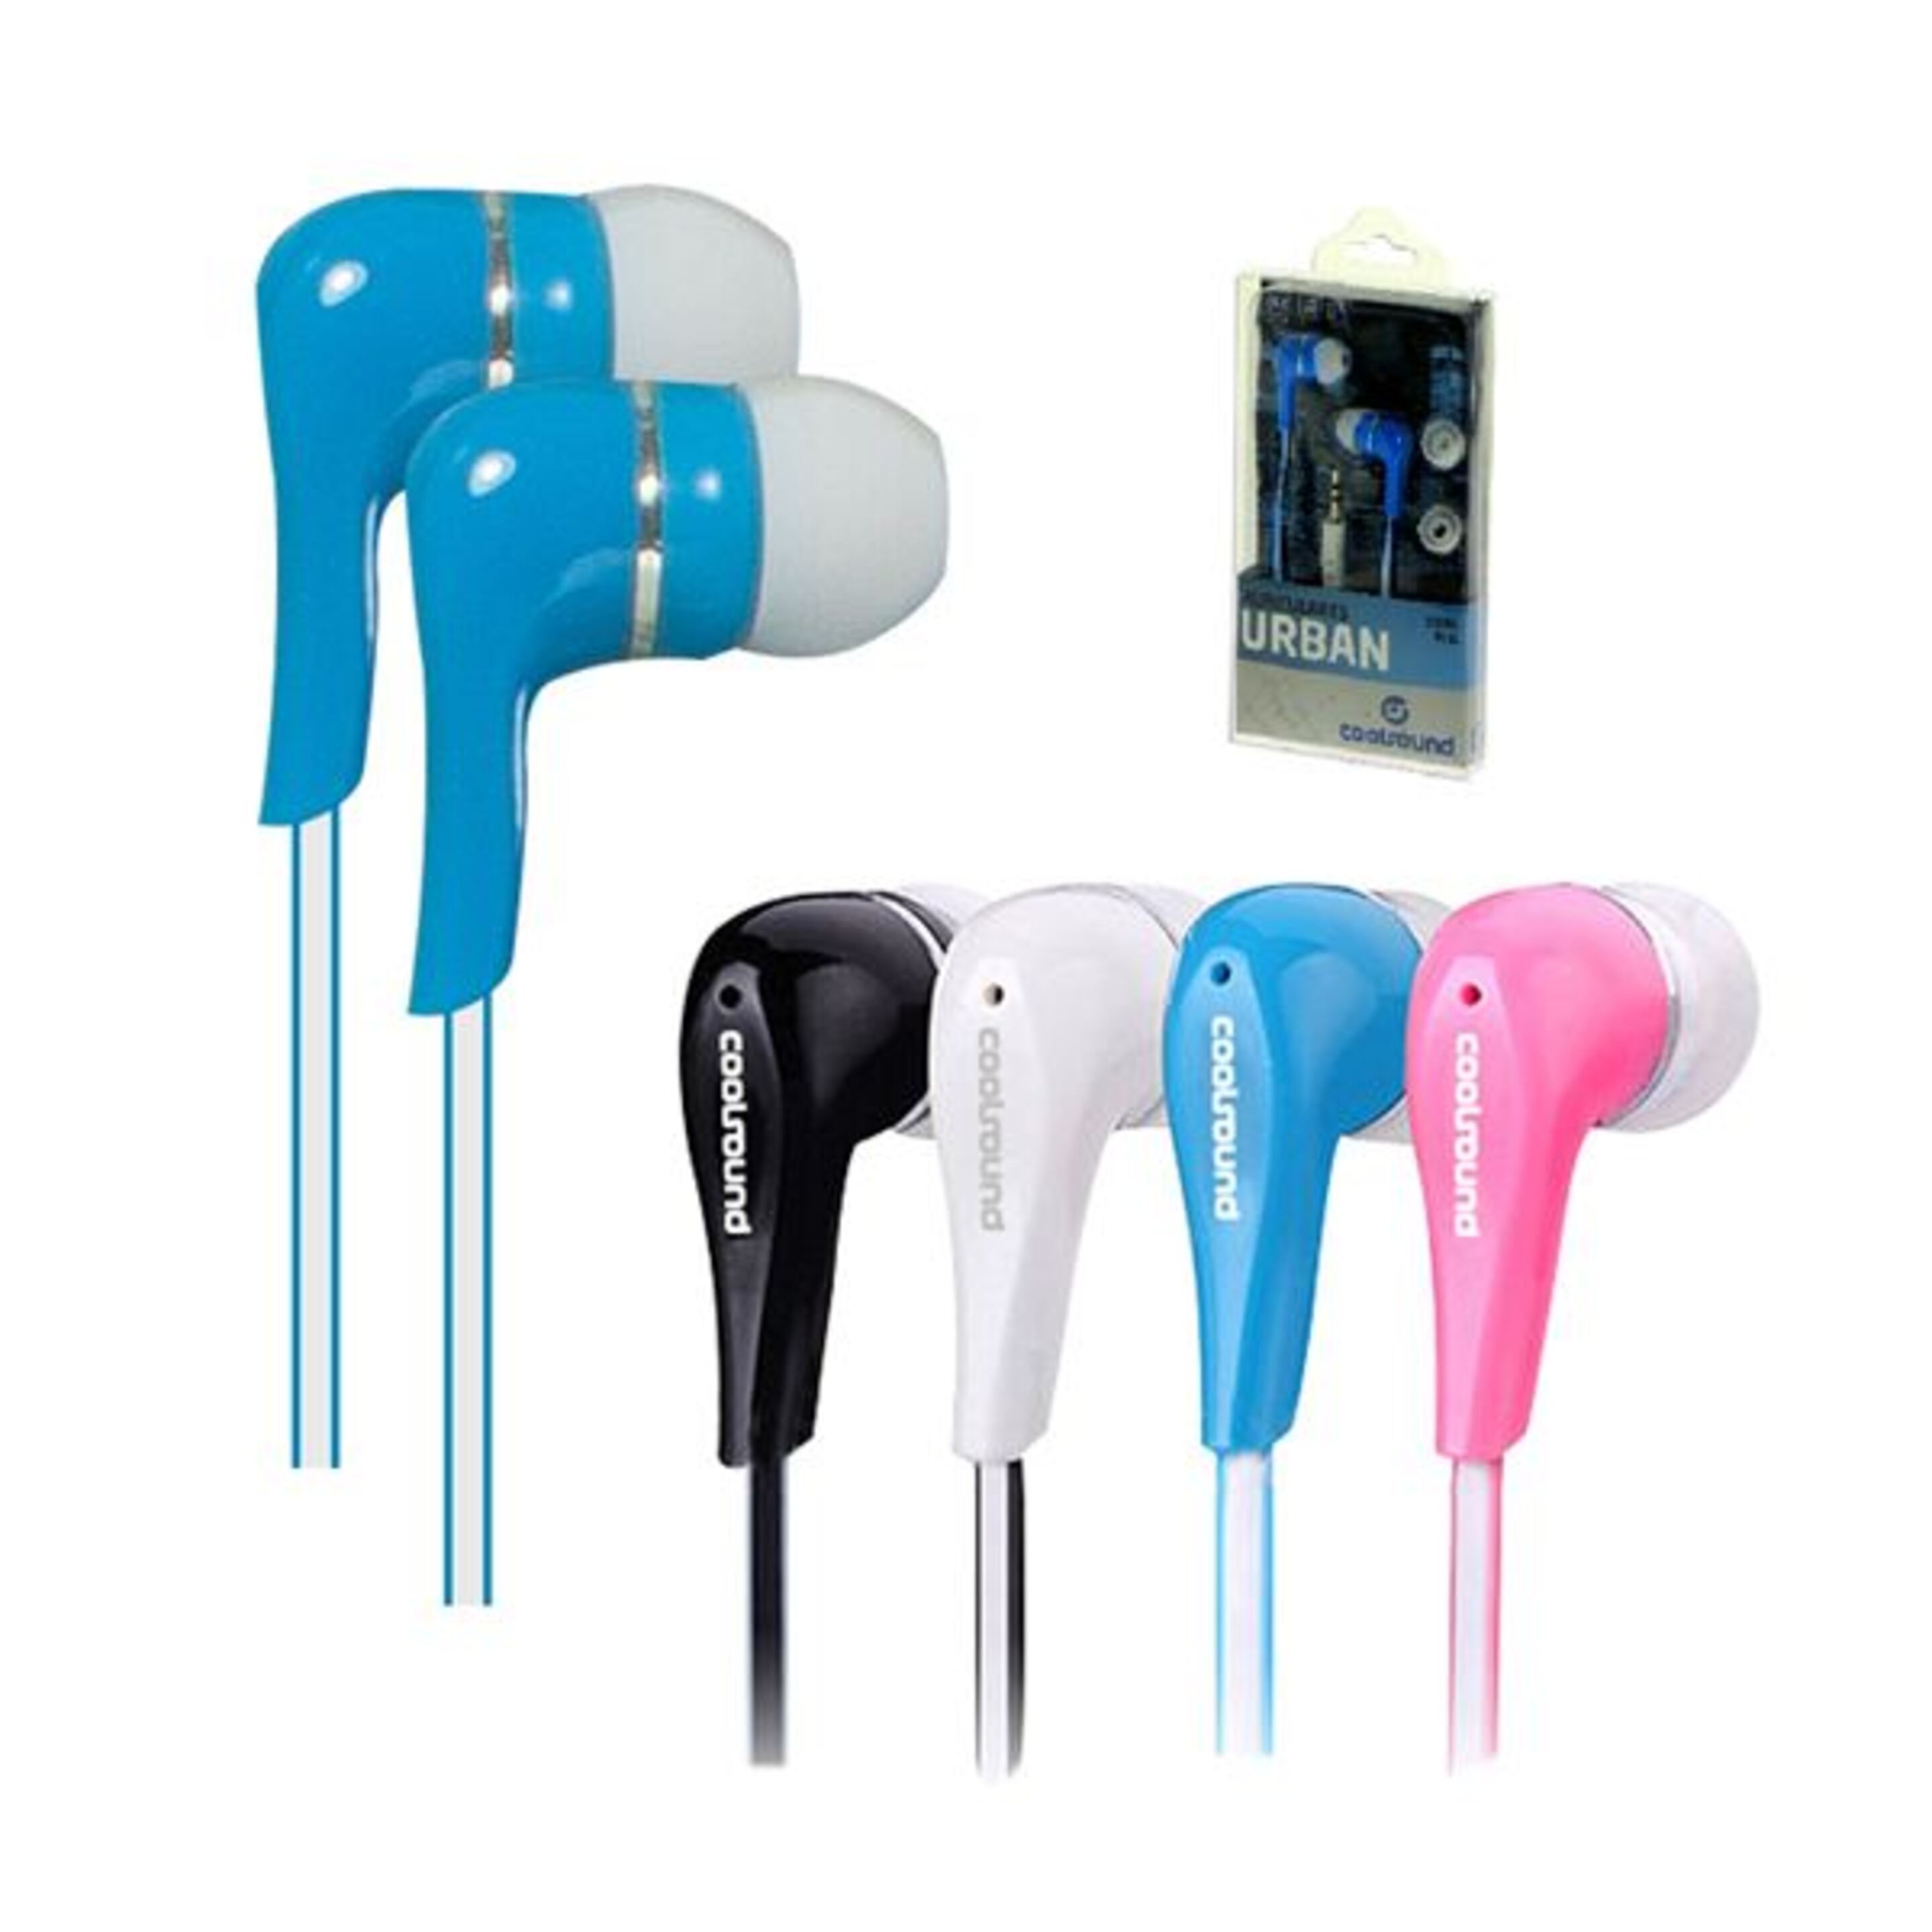 Auriculares Urban In-ear Azul Coolsound - azul - 